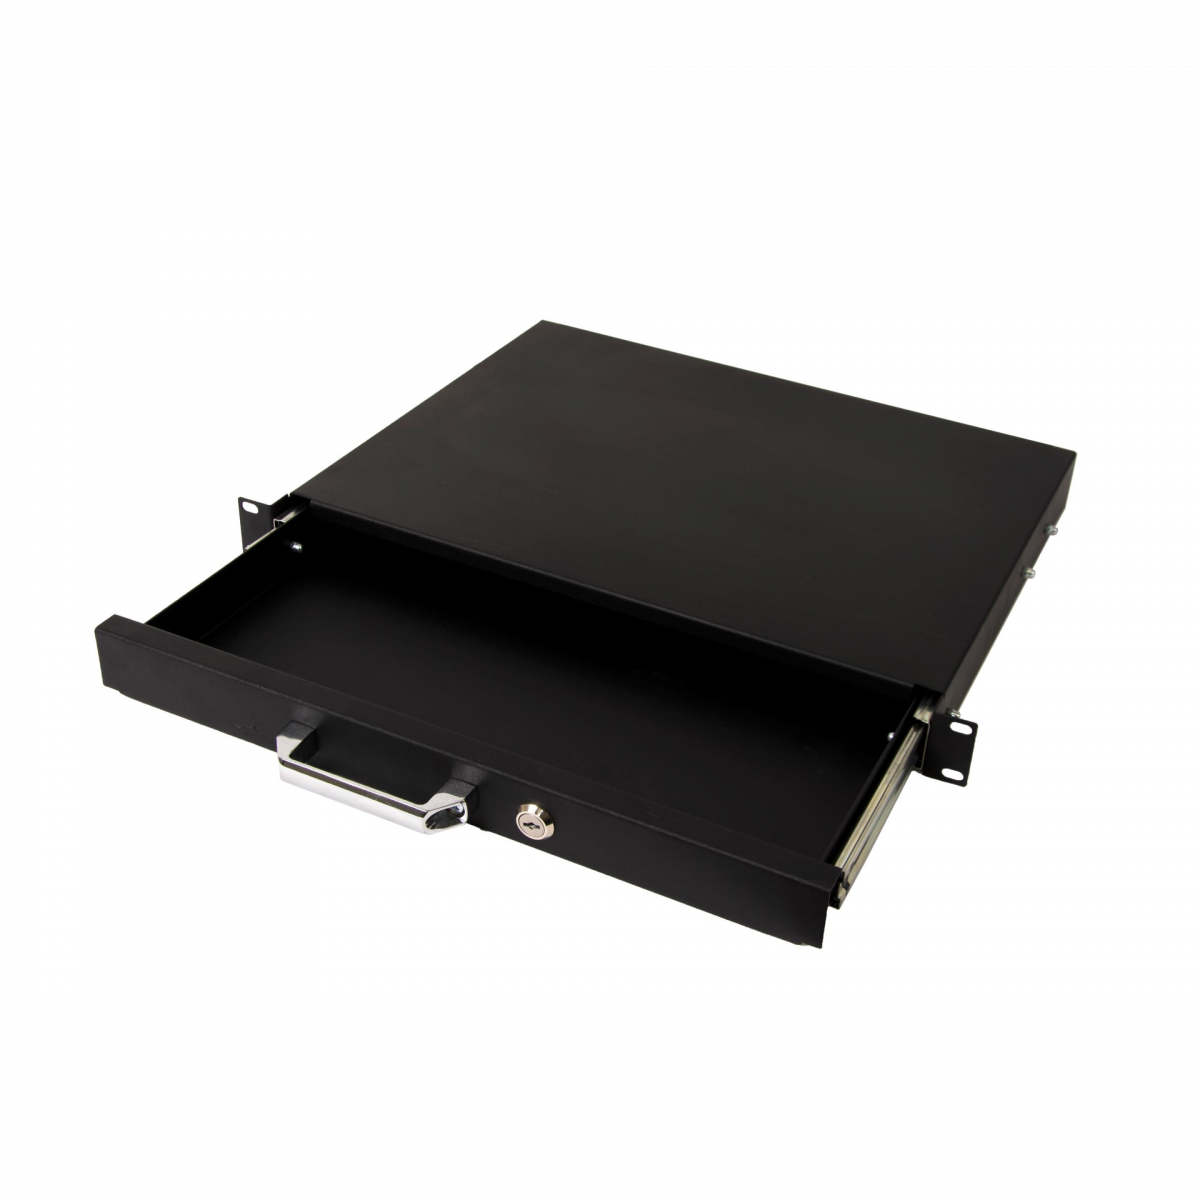 Выдвижной ящик для документов глубиной 355мм, высота 1U, цвет-черный (SNR-CASE-355-1U-B)